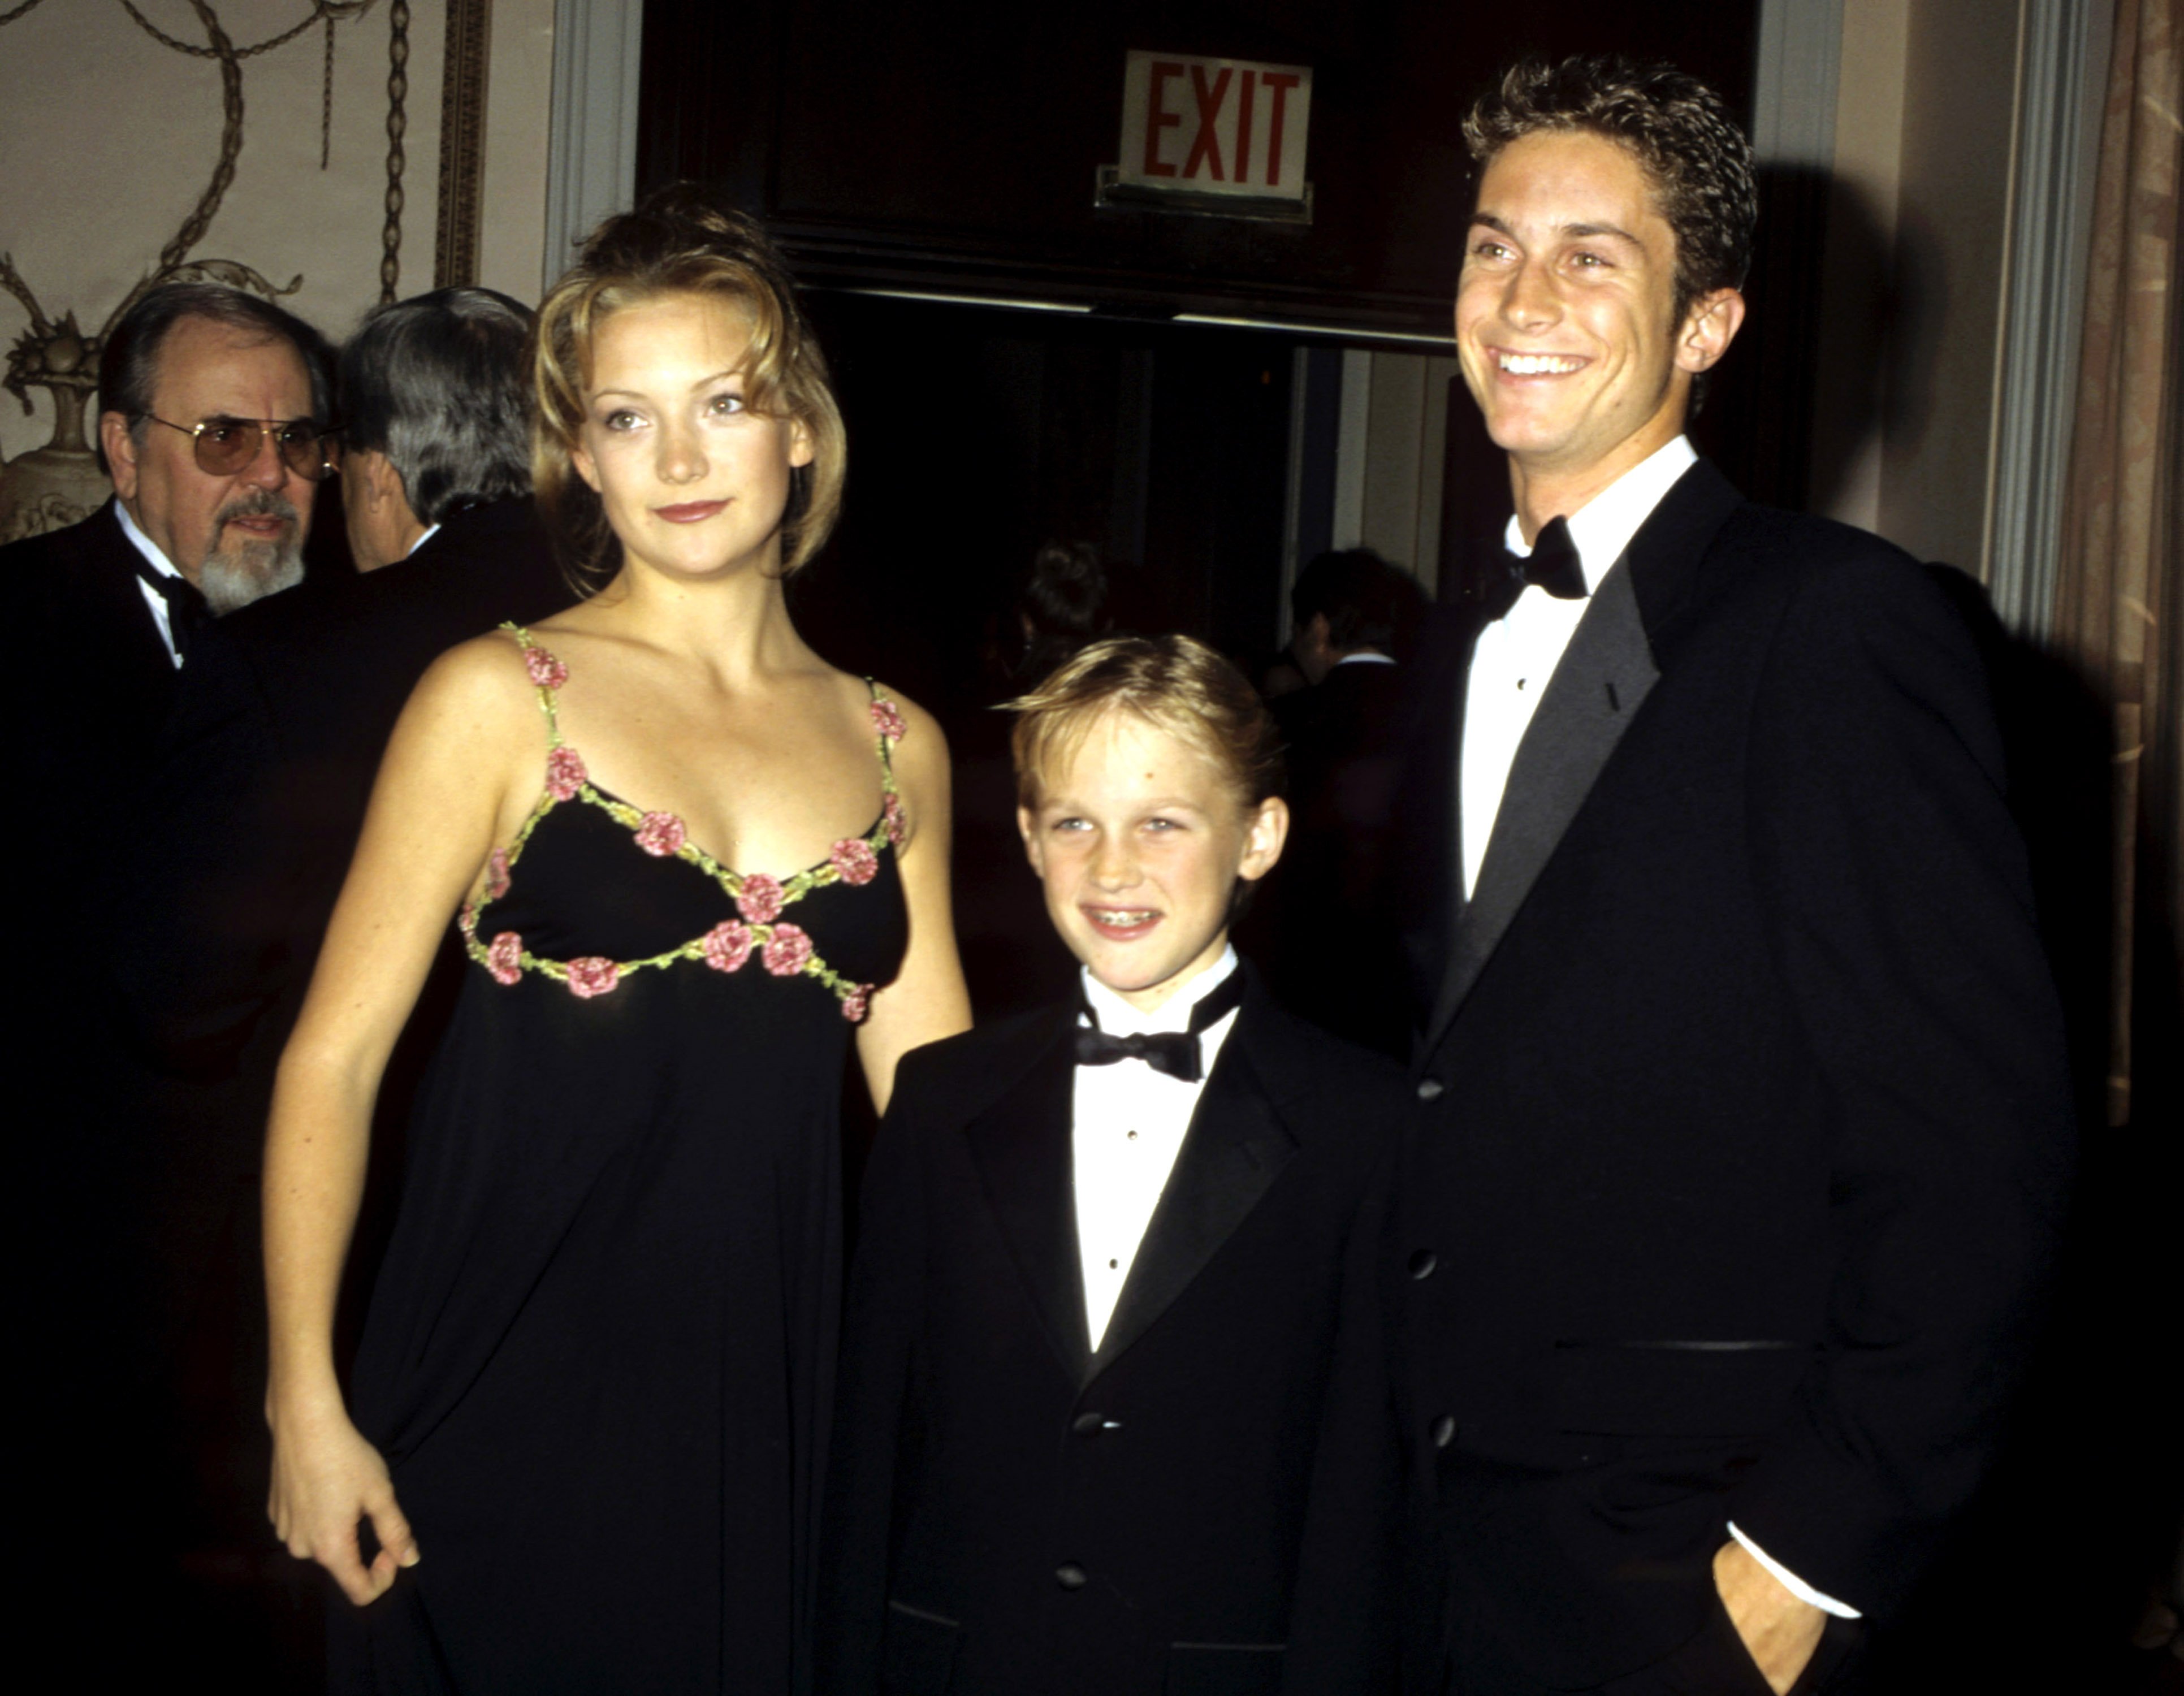 Η Kate Hudson με τα αδέρφια της Wyatt Russell και Oliver Hudson όταν το Αμερικανικό Μουσείο Κινούμενης Εικόνας τίμησε την Goldie Hawn στις 25 Φεβρουαρίου 1997 |  Πηγή: Getty Images